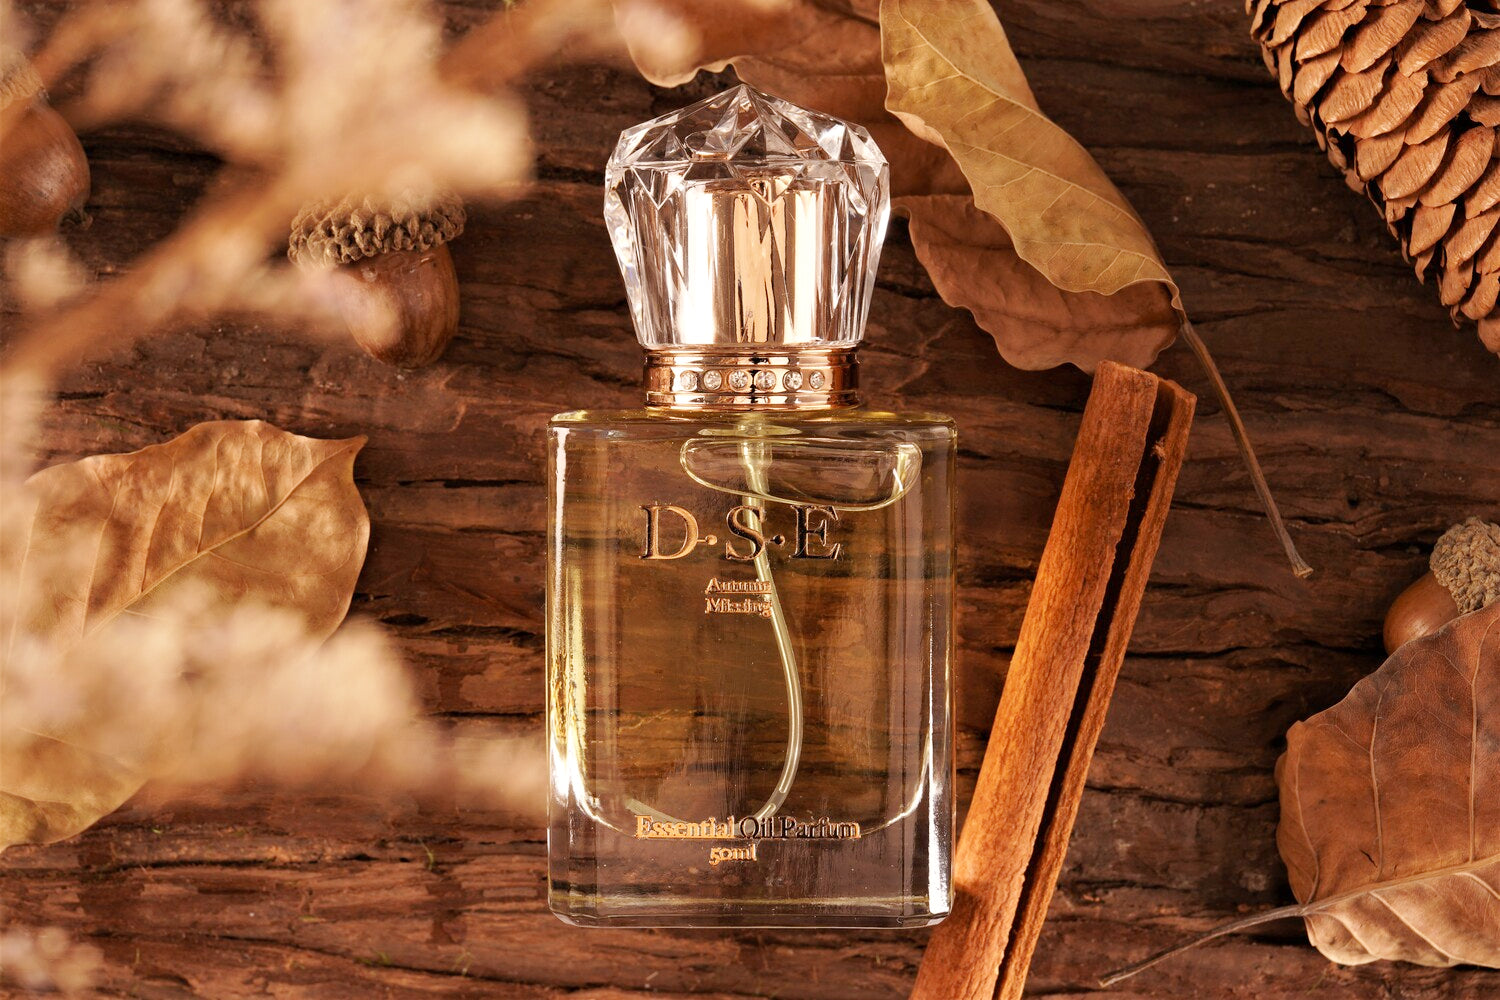 Autumn Missing Essential Oil Perfume